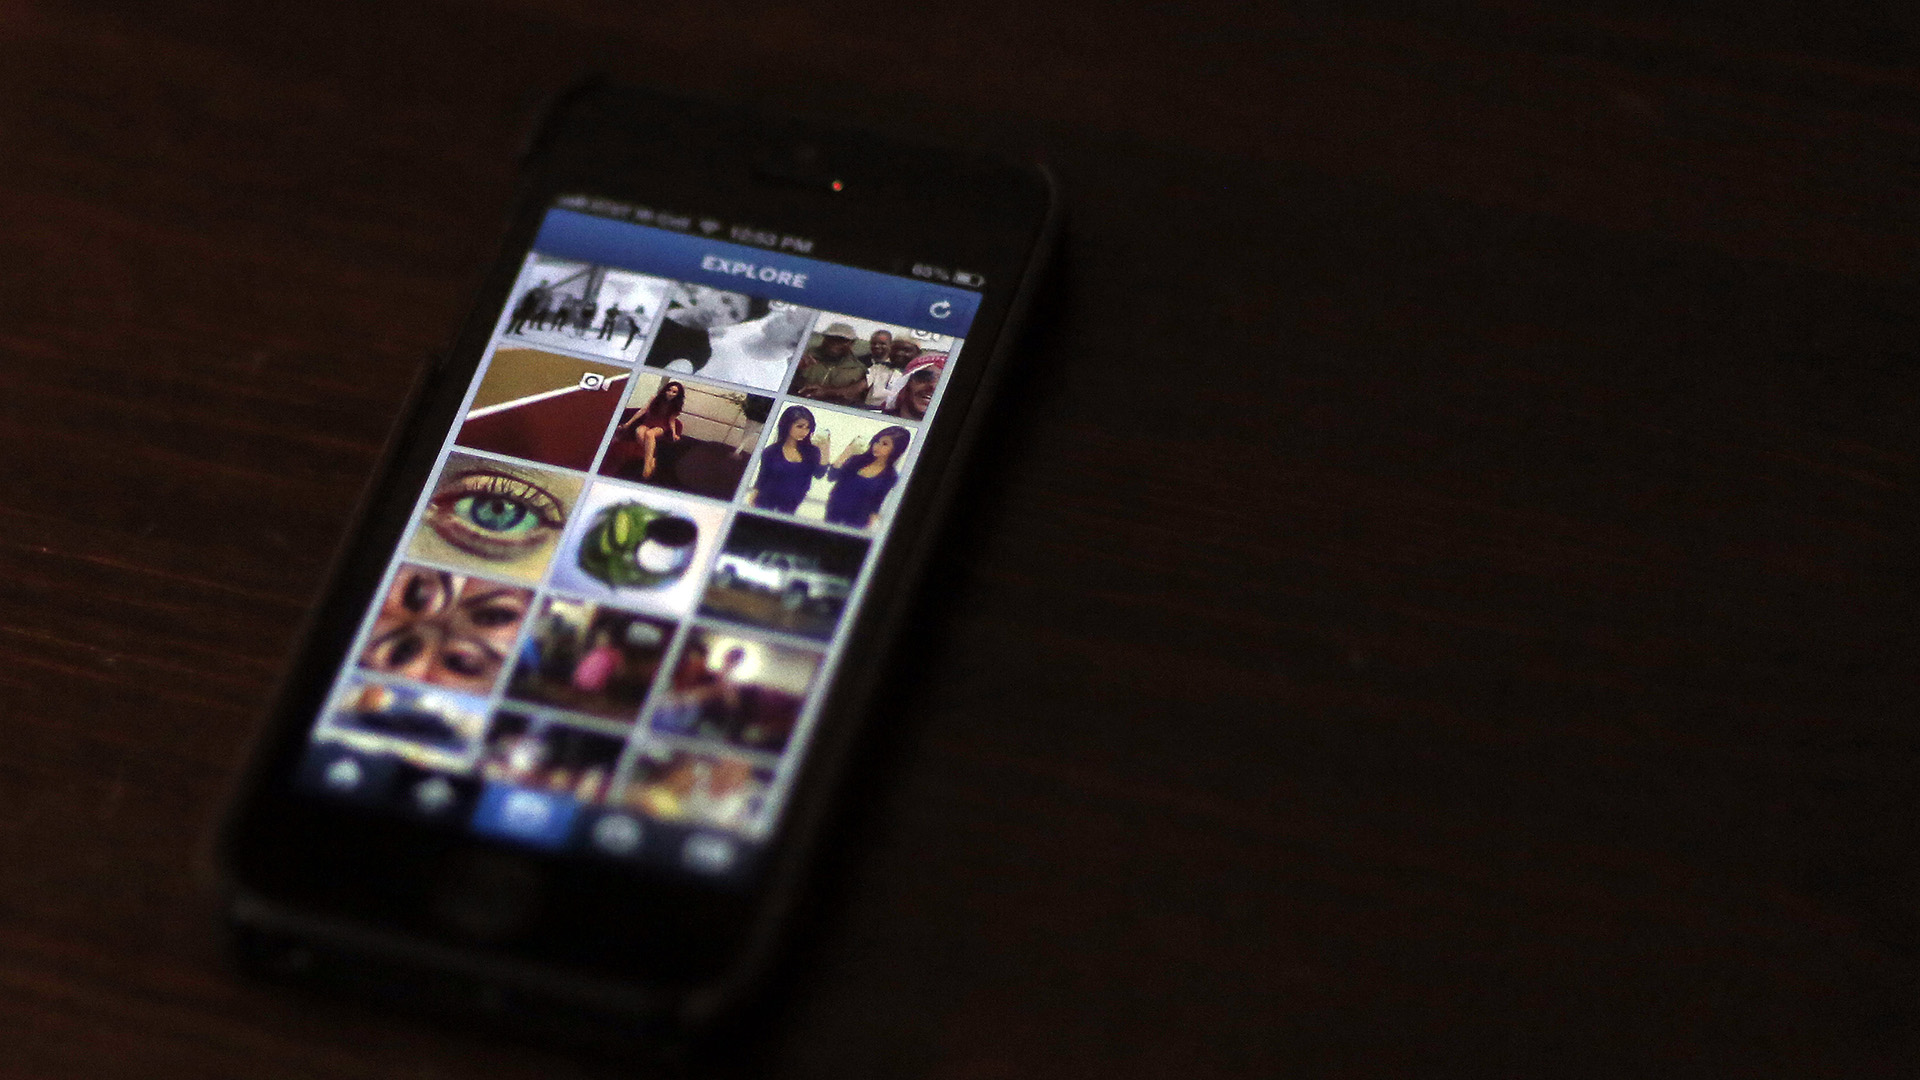 Instagram cubrirá con una cortinilla los contenidos sensibles